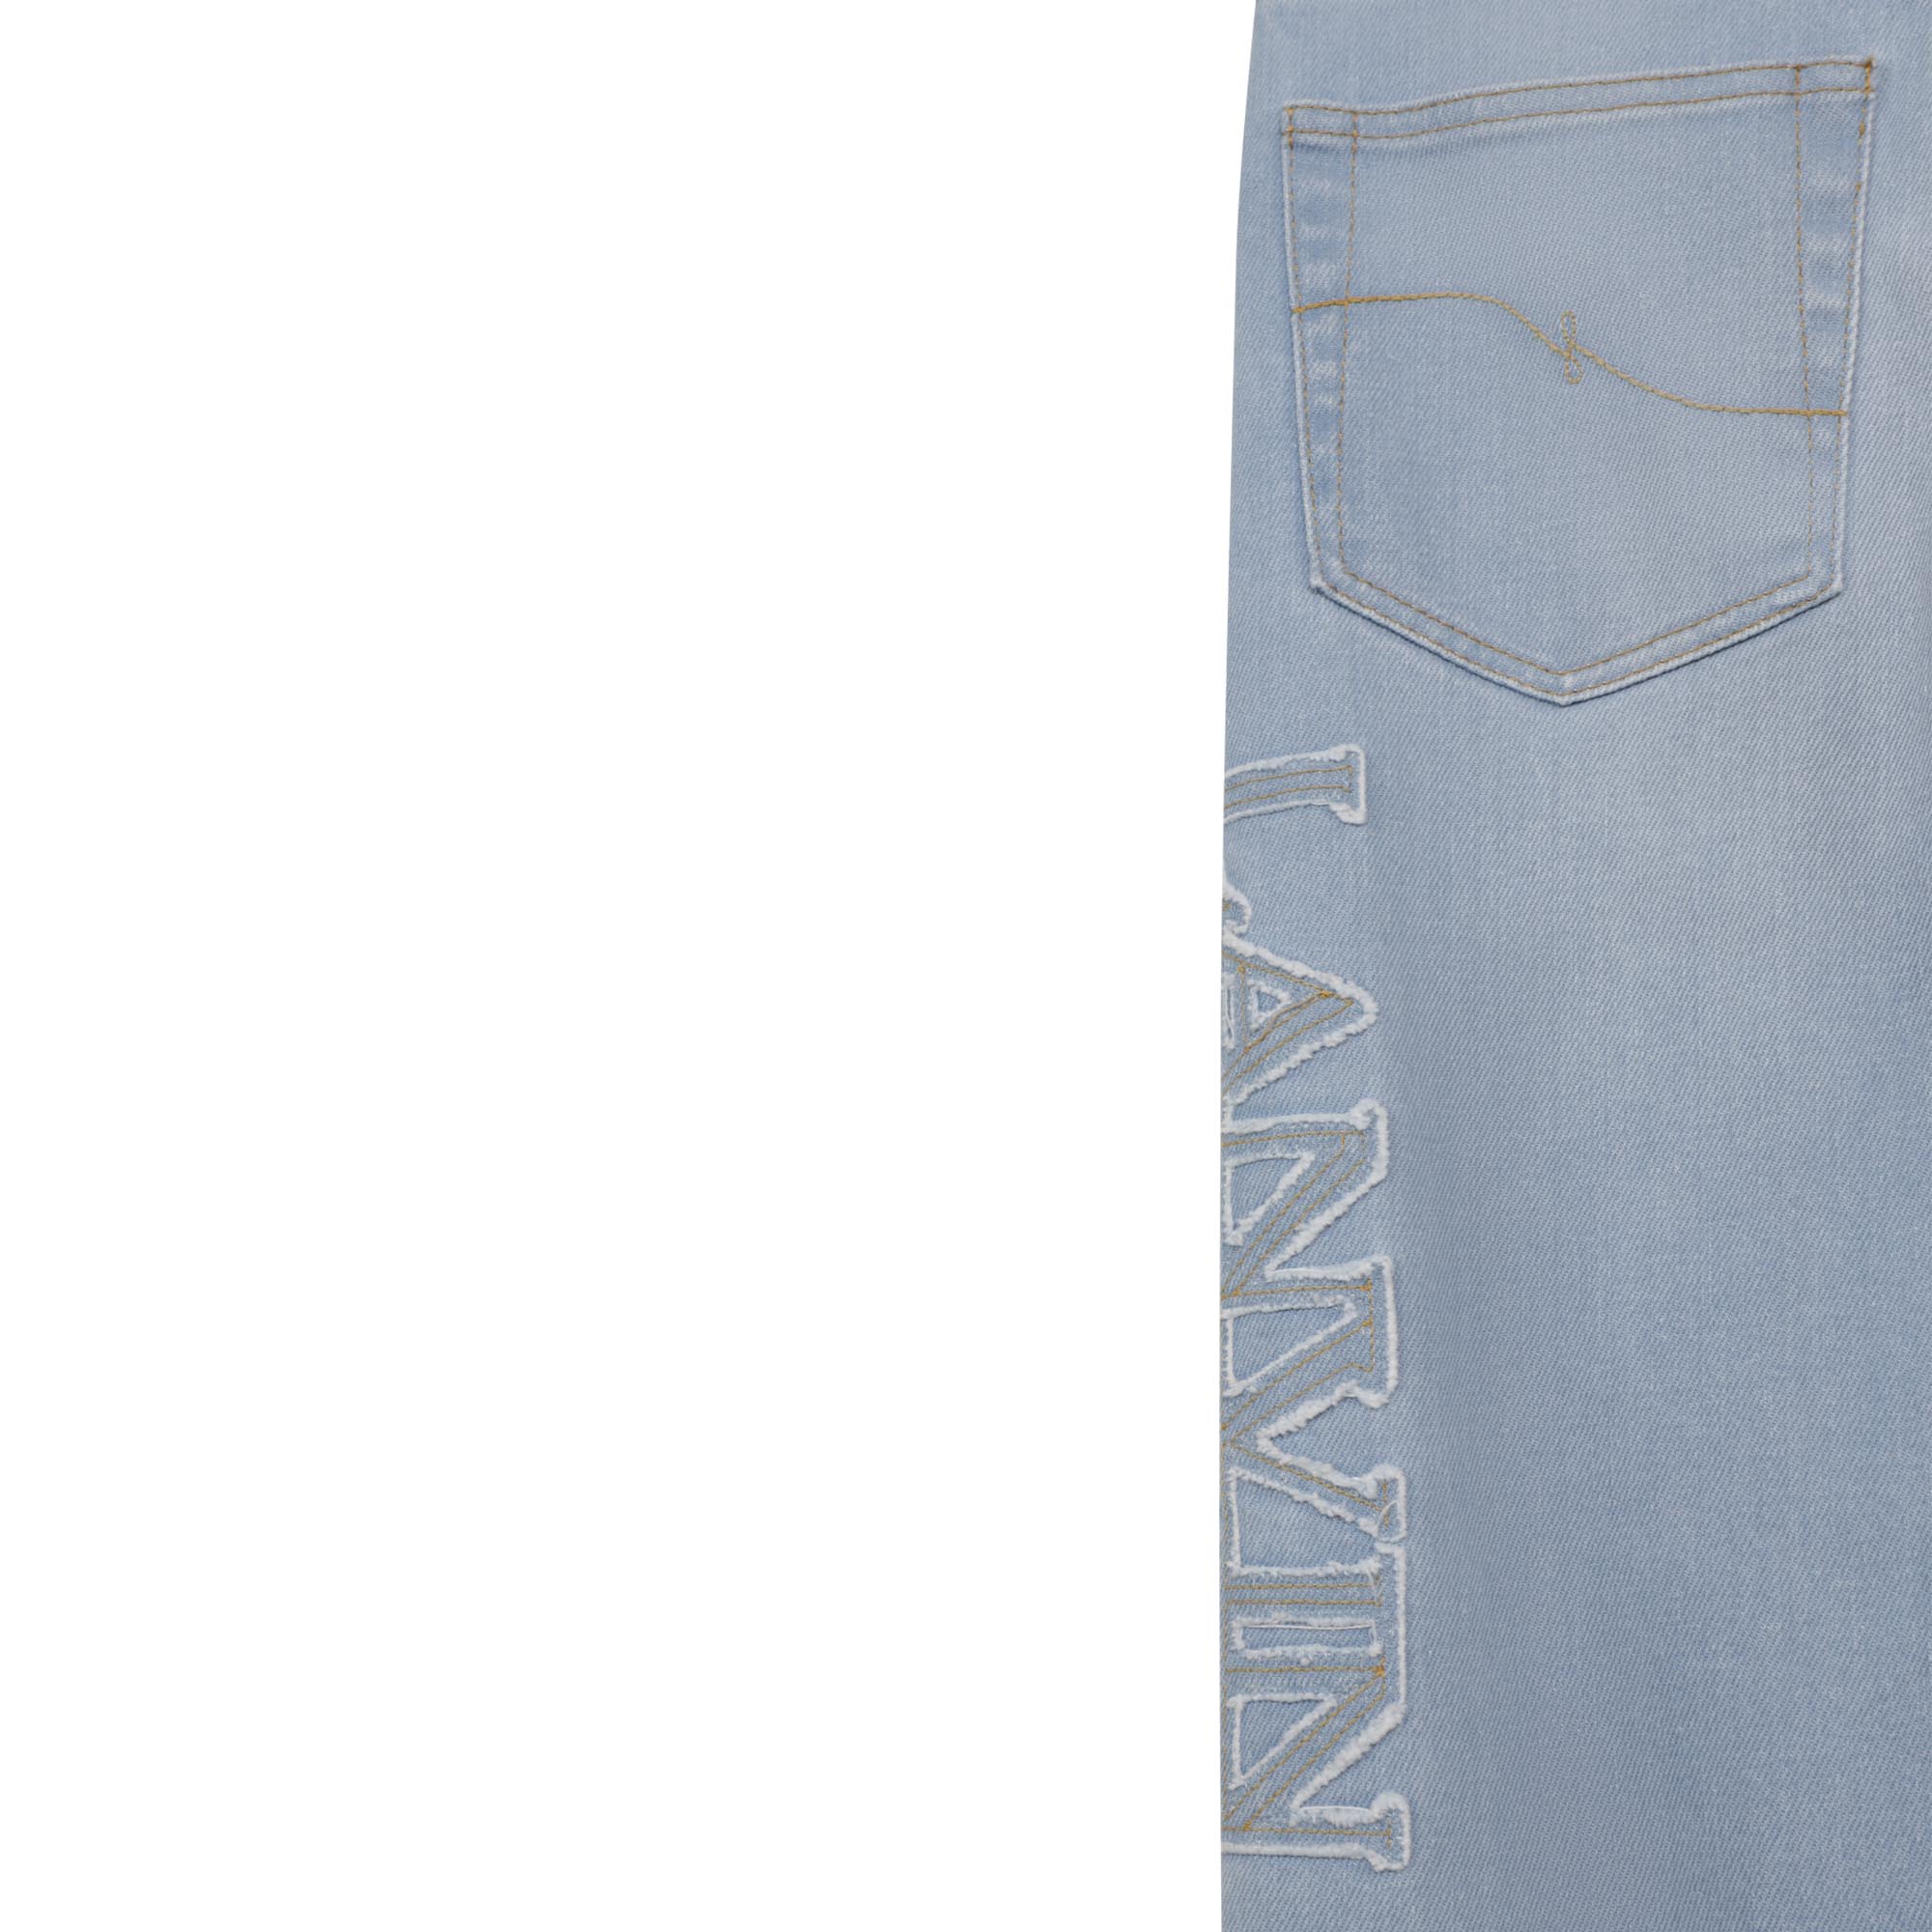 Katoenen jeans met 5 zakken LANVIN Voor